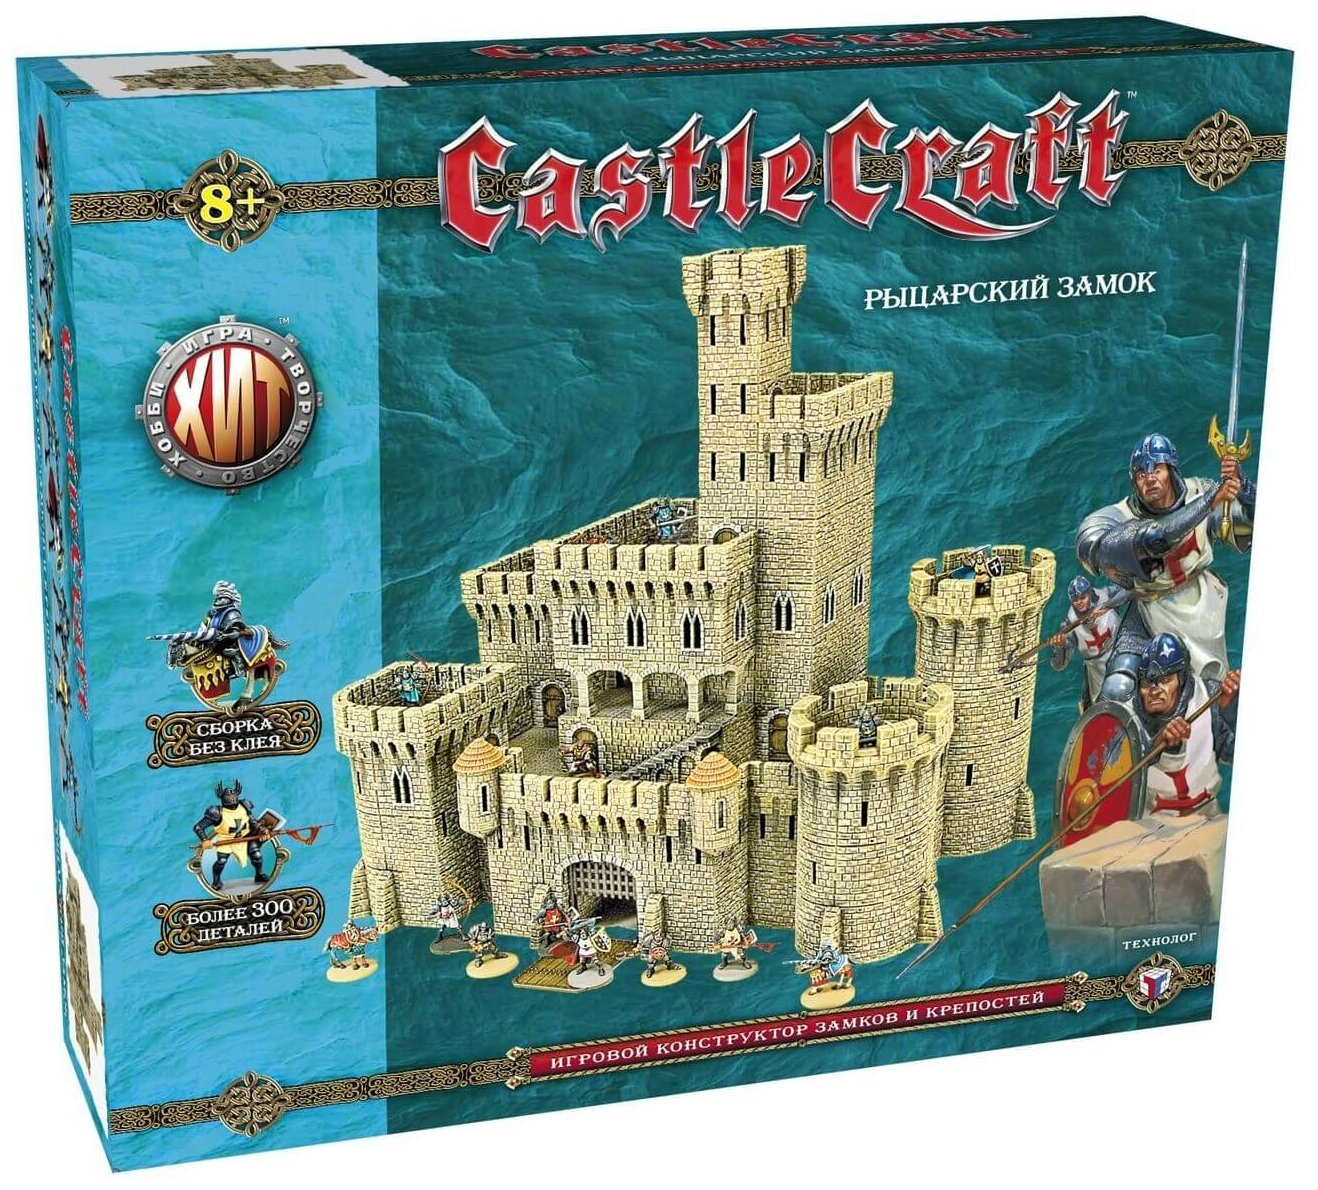 Технолог ТХ. Castlecraft "Рыцарский замок" (крепость) большой набор арт.00972 /6 00972